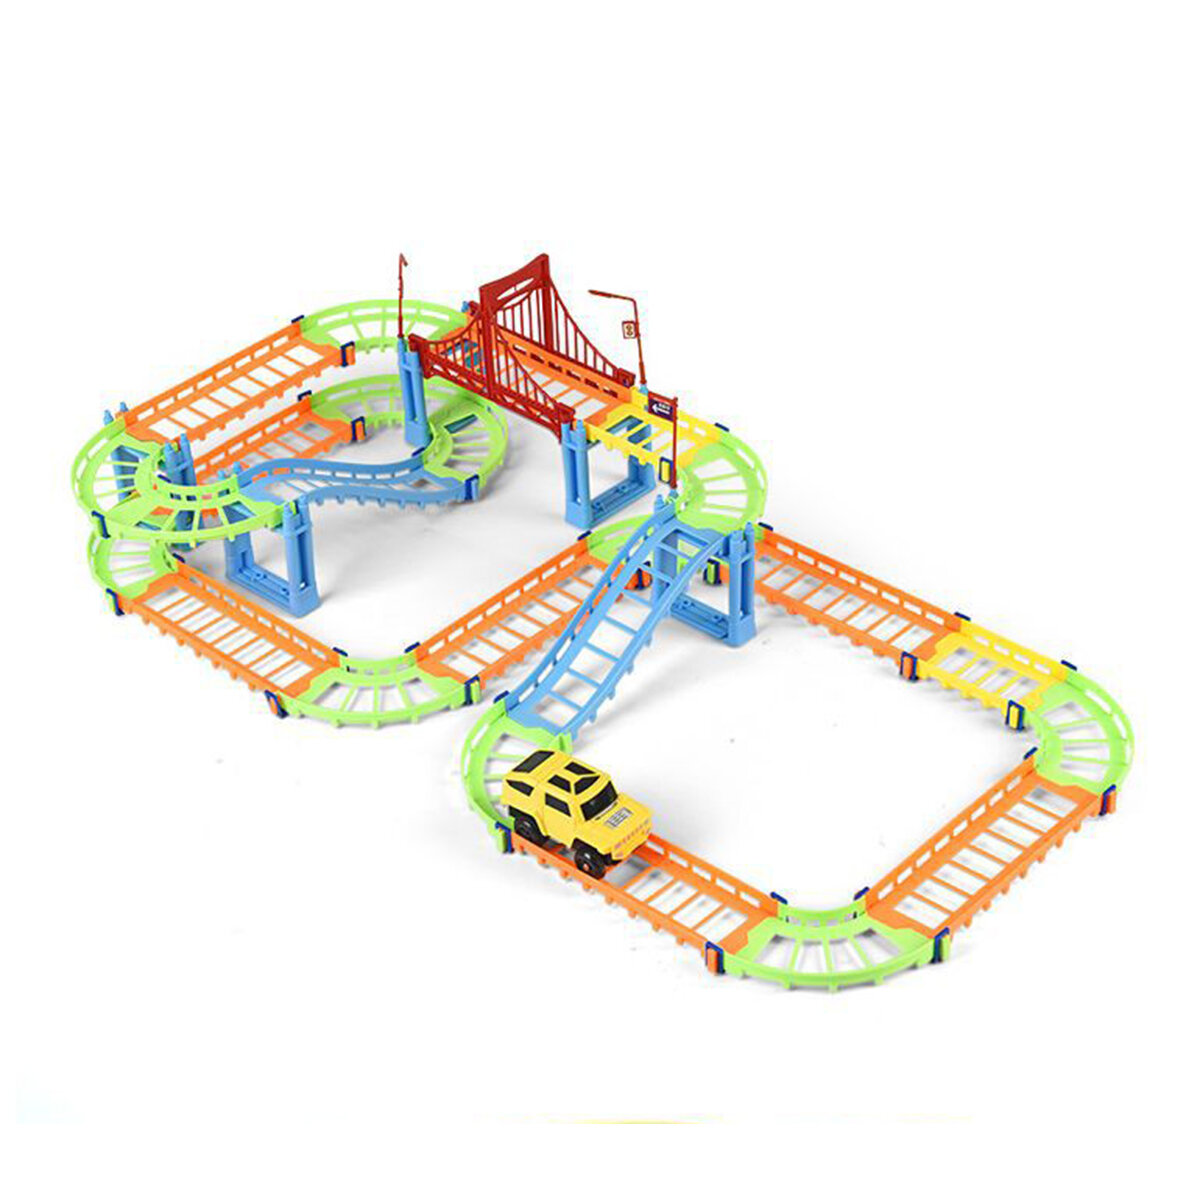 80/91/140 Stks DIY Montage Elektrische ABS Track Car Model Set Puzzel Educatief Speelgoed voor Kinde